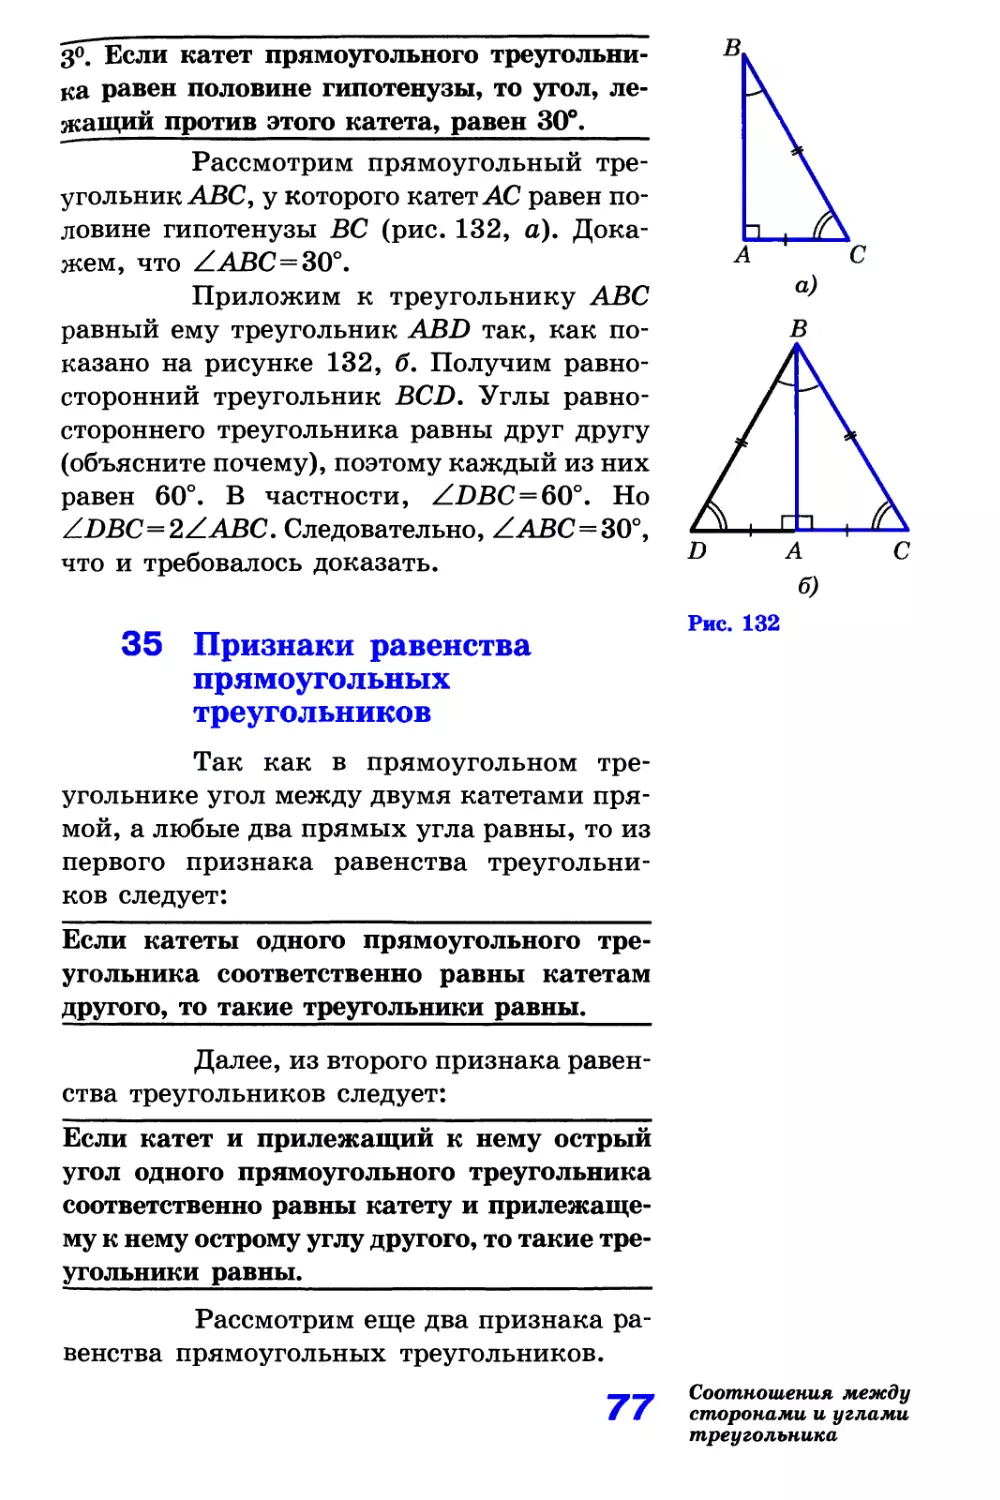 35. Признаки равенства прямоугольных треугольников